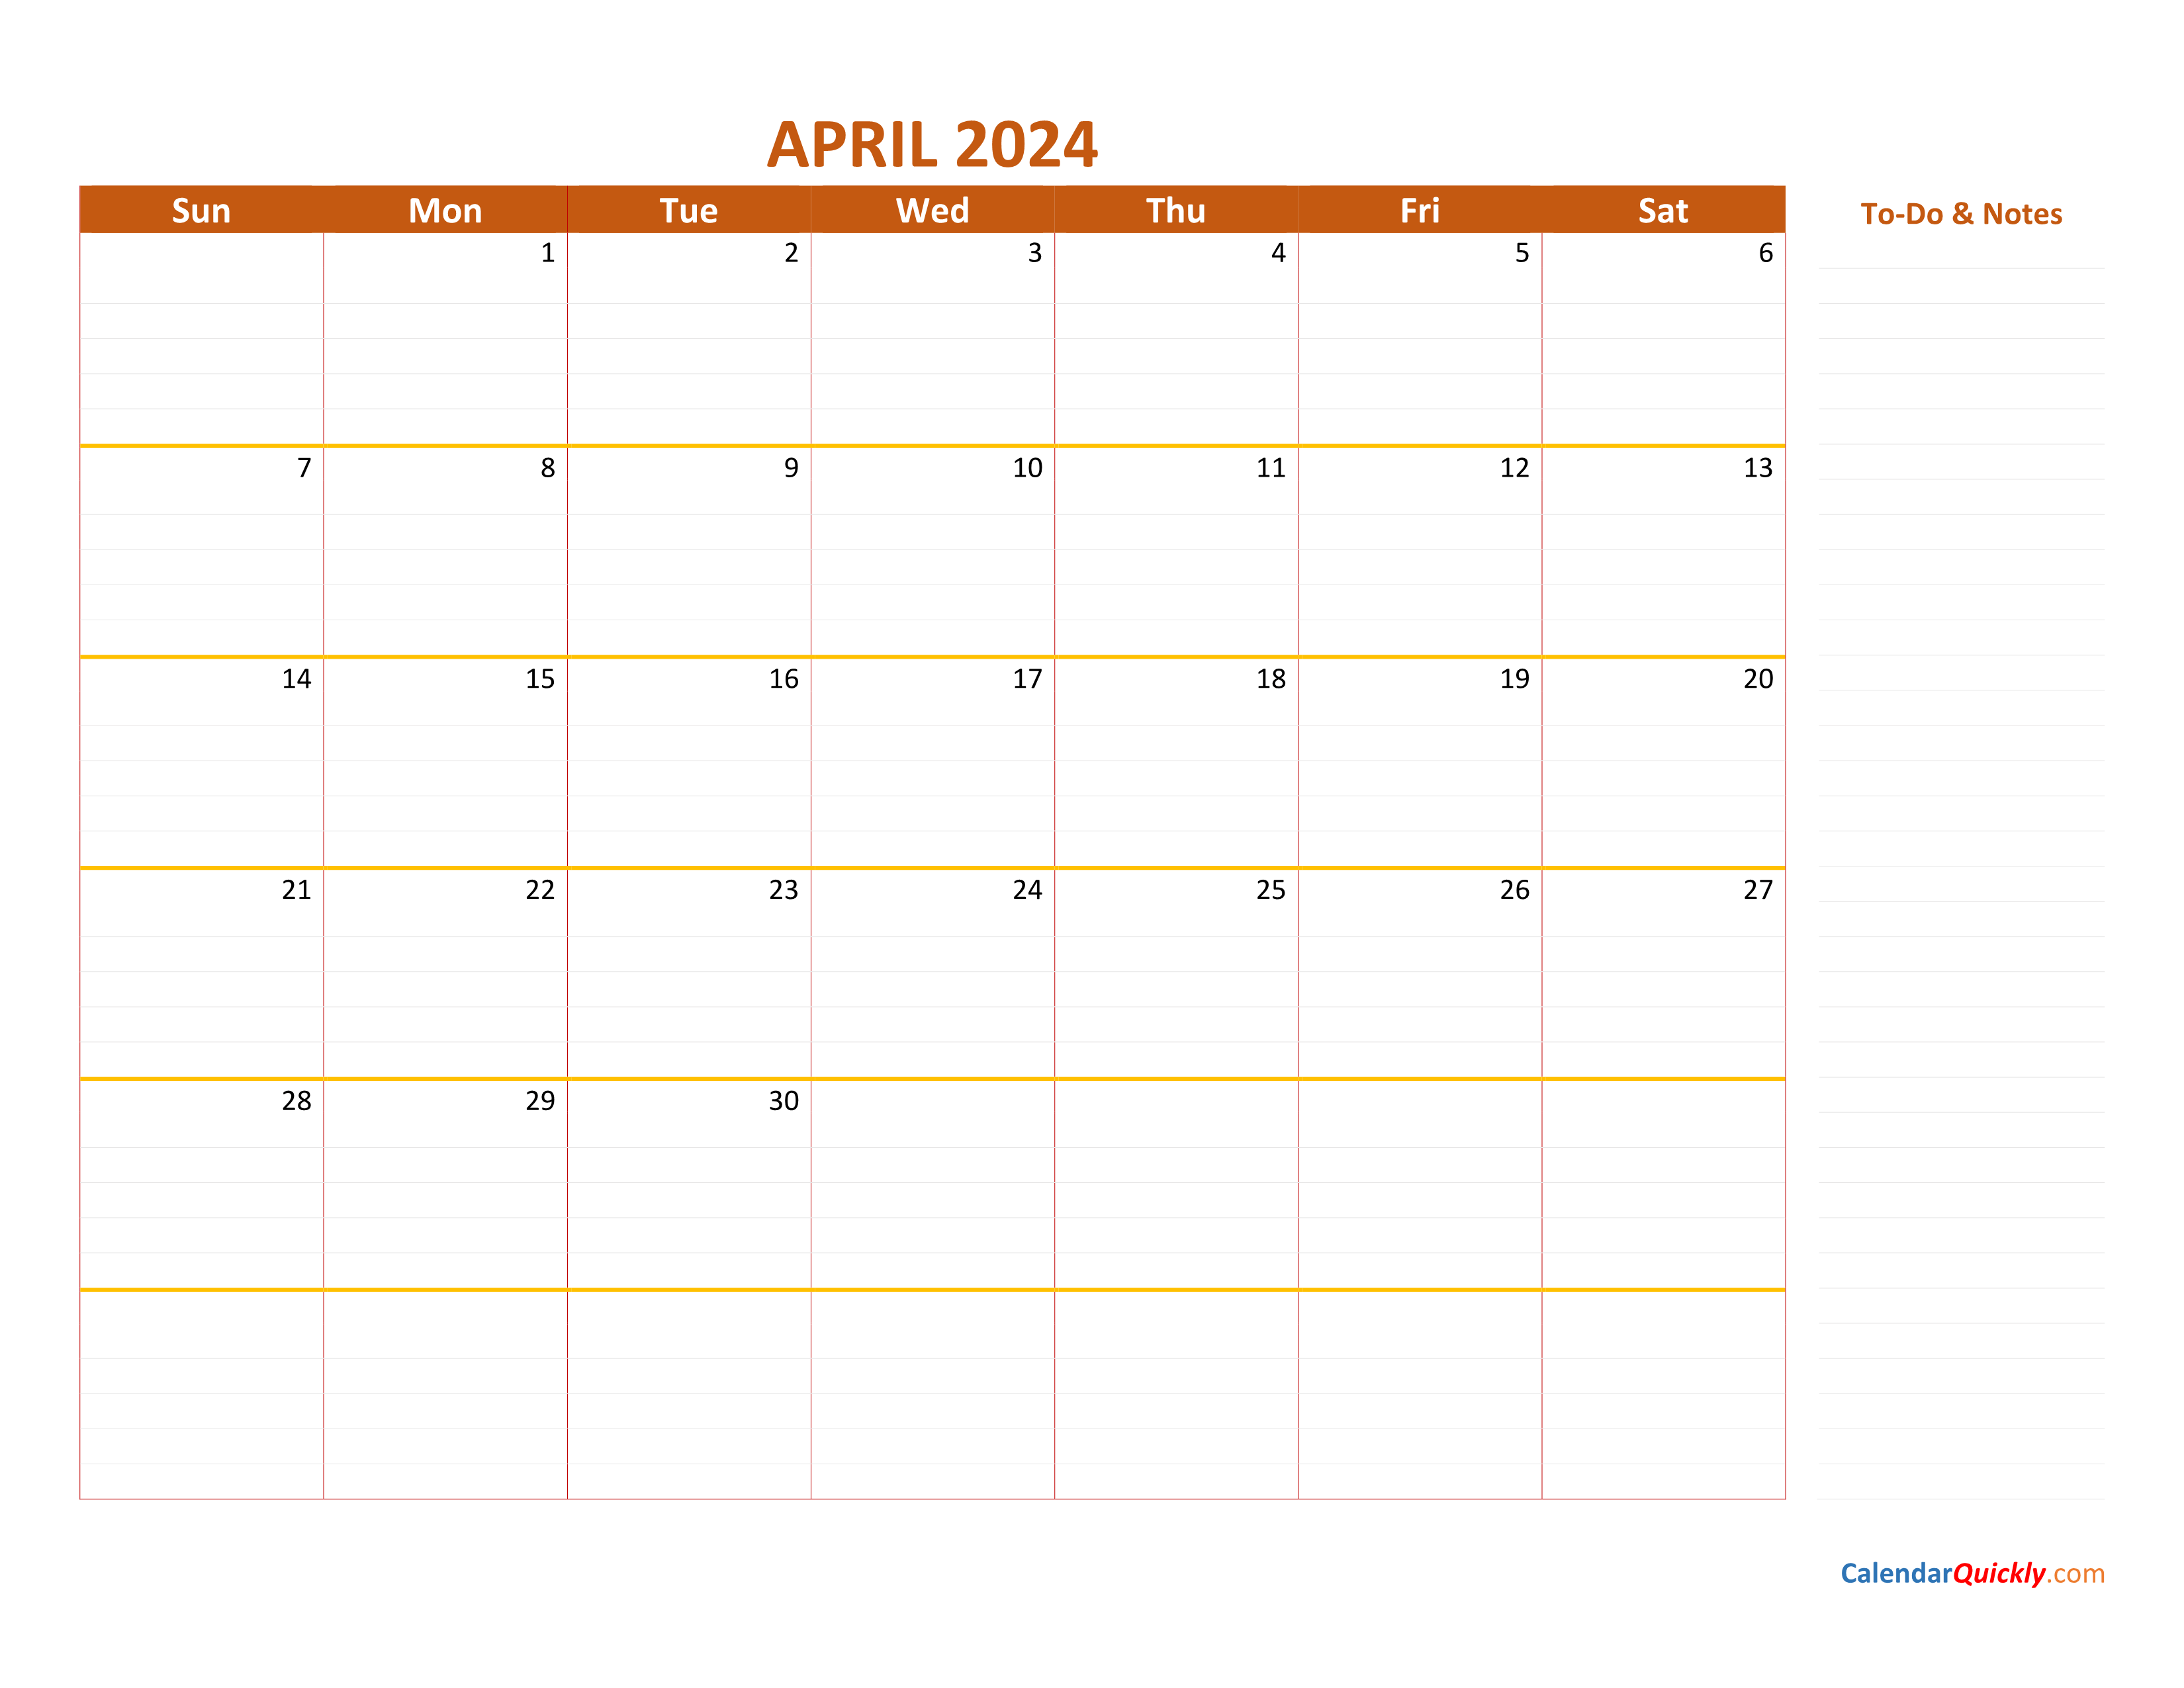 April 2024 Calendar Calendar Quickly